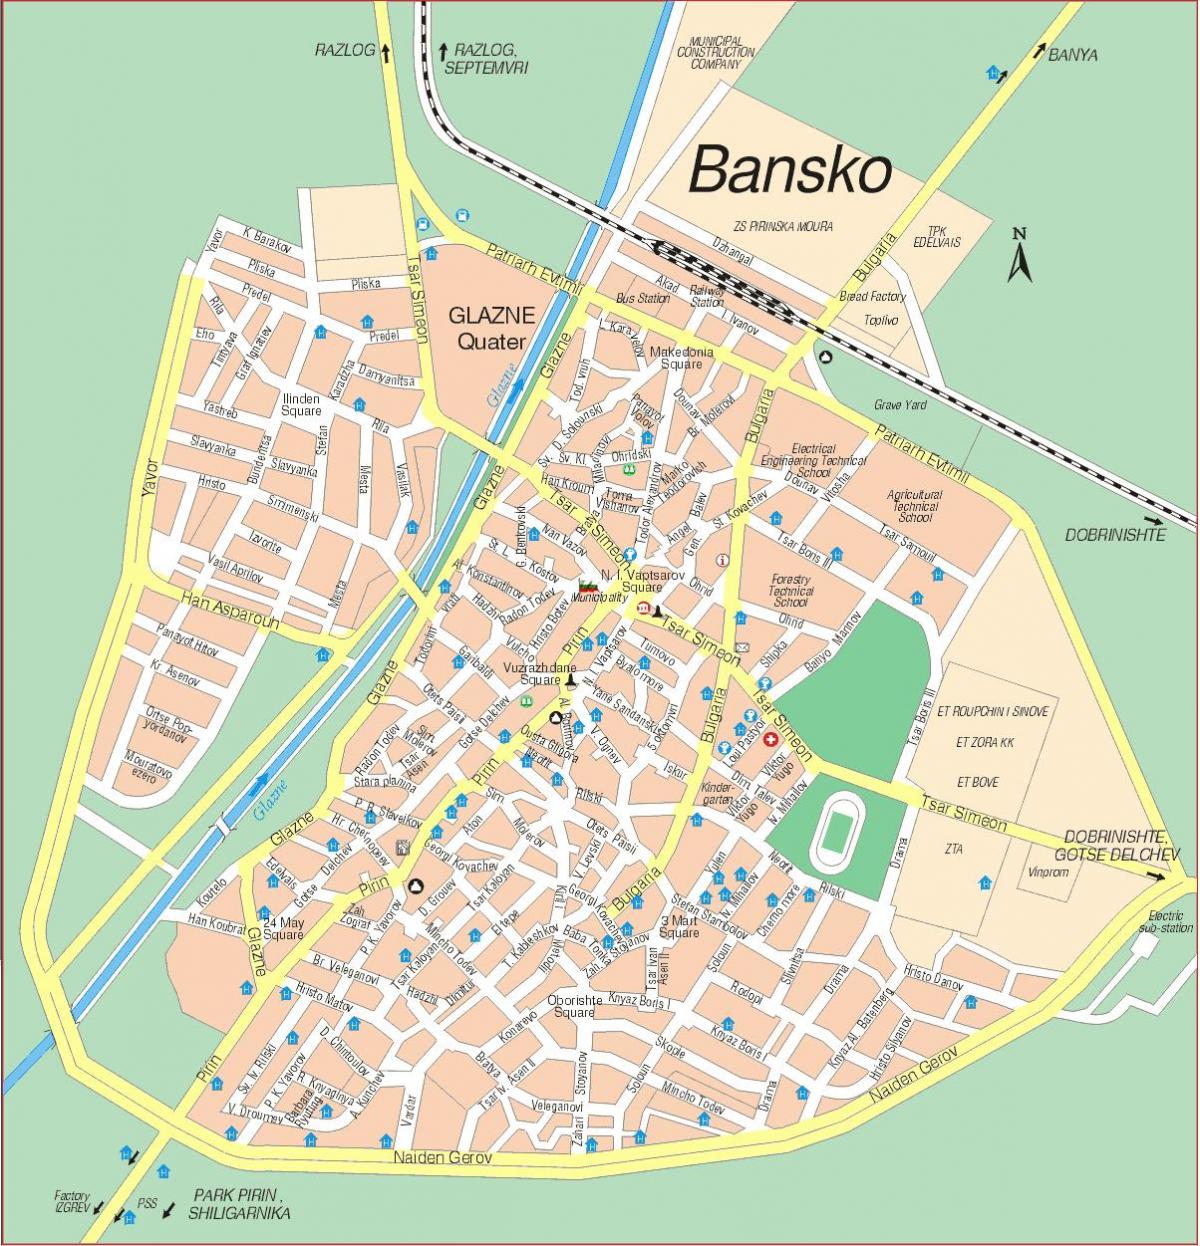 Bulgária banskói térkép